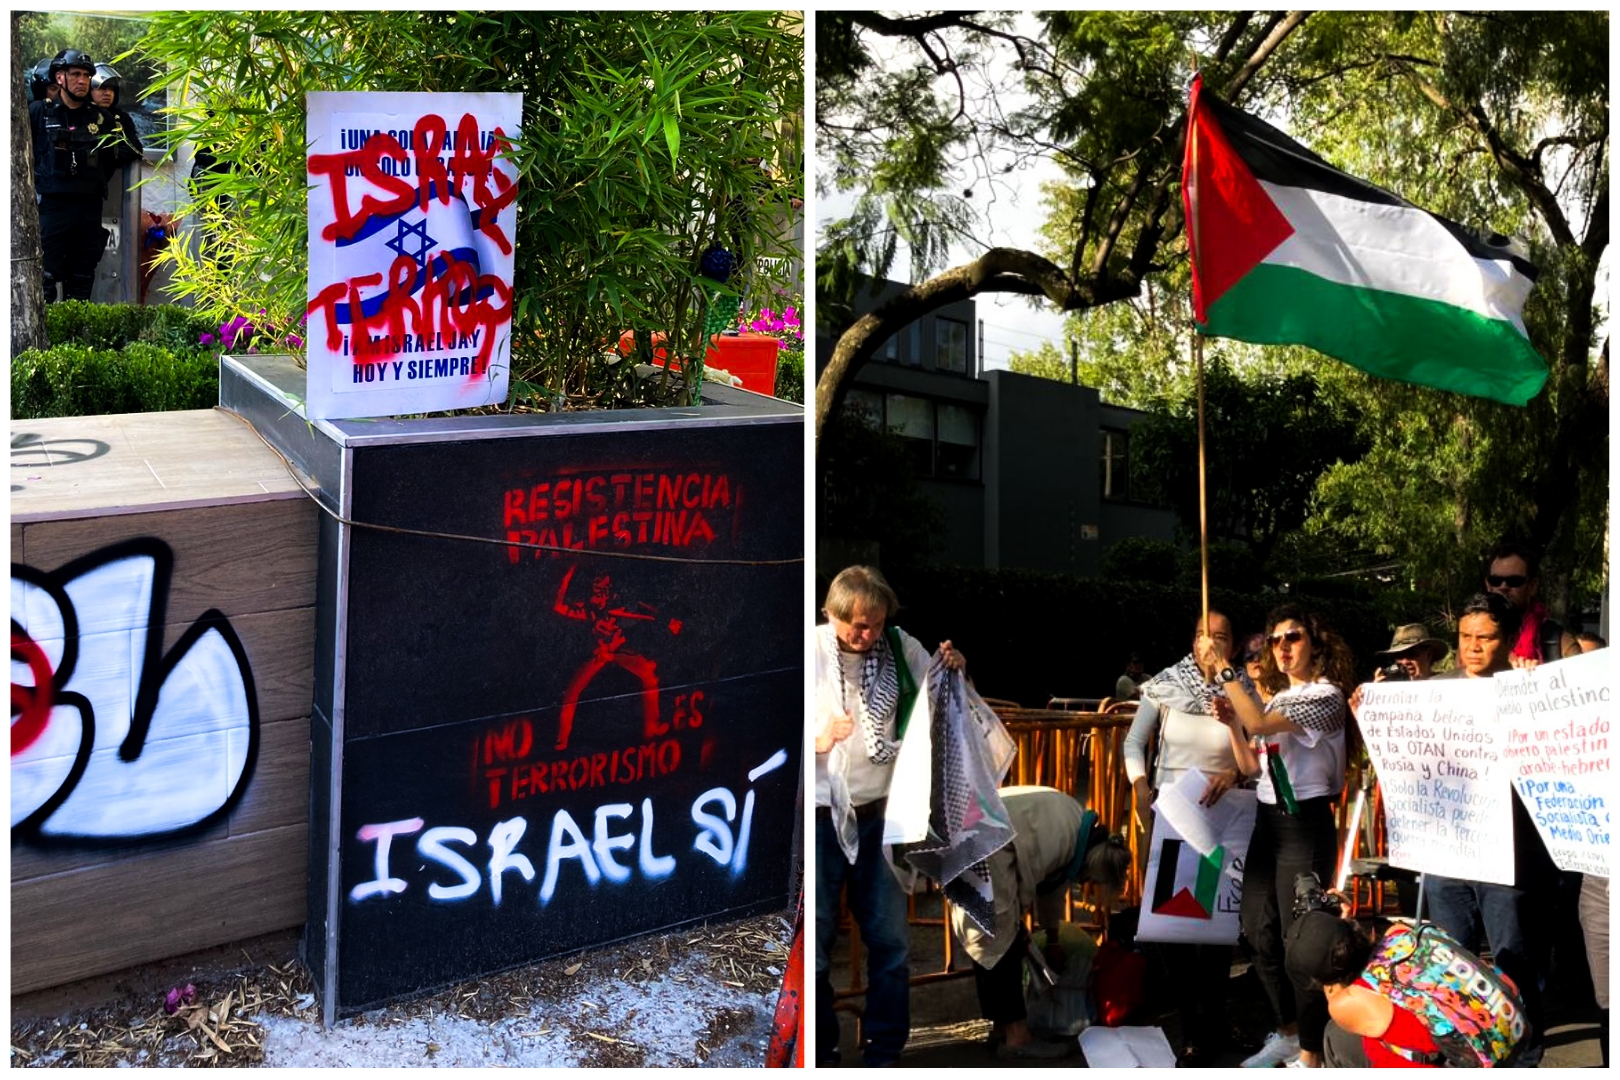 Embajada de Israel en México condeno las protestas con vandalismo a favor de Palestina